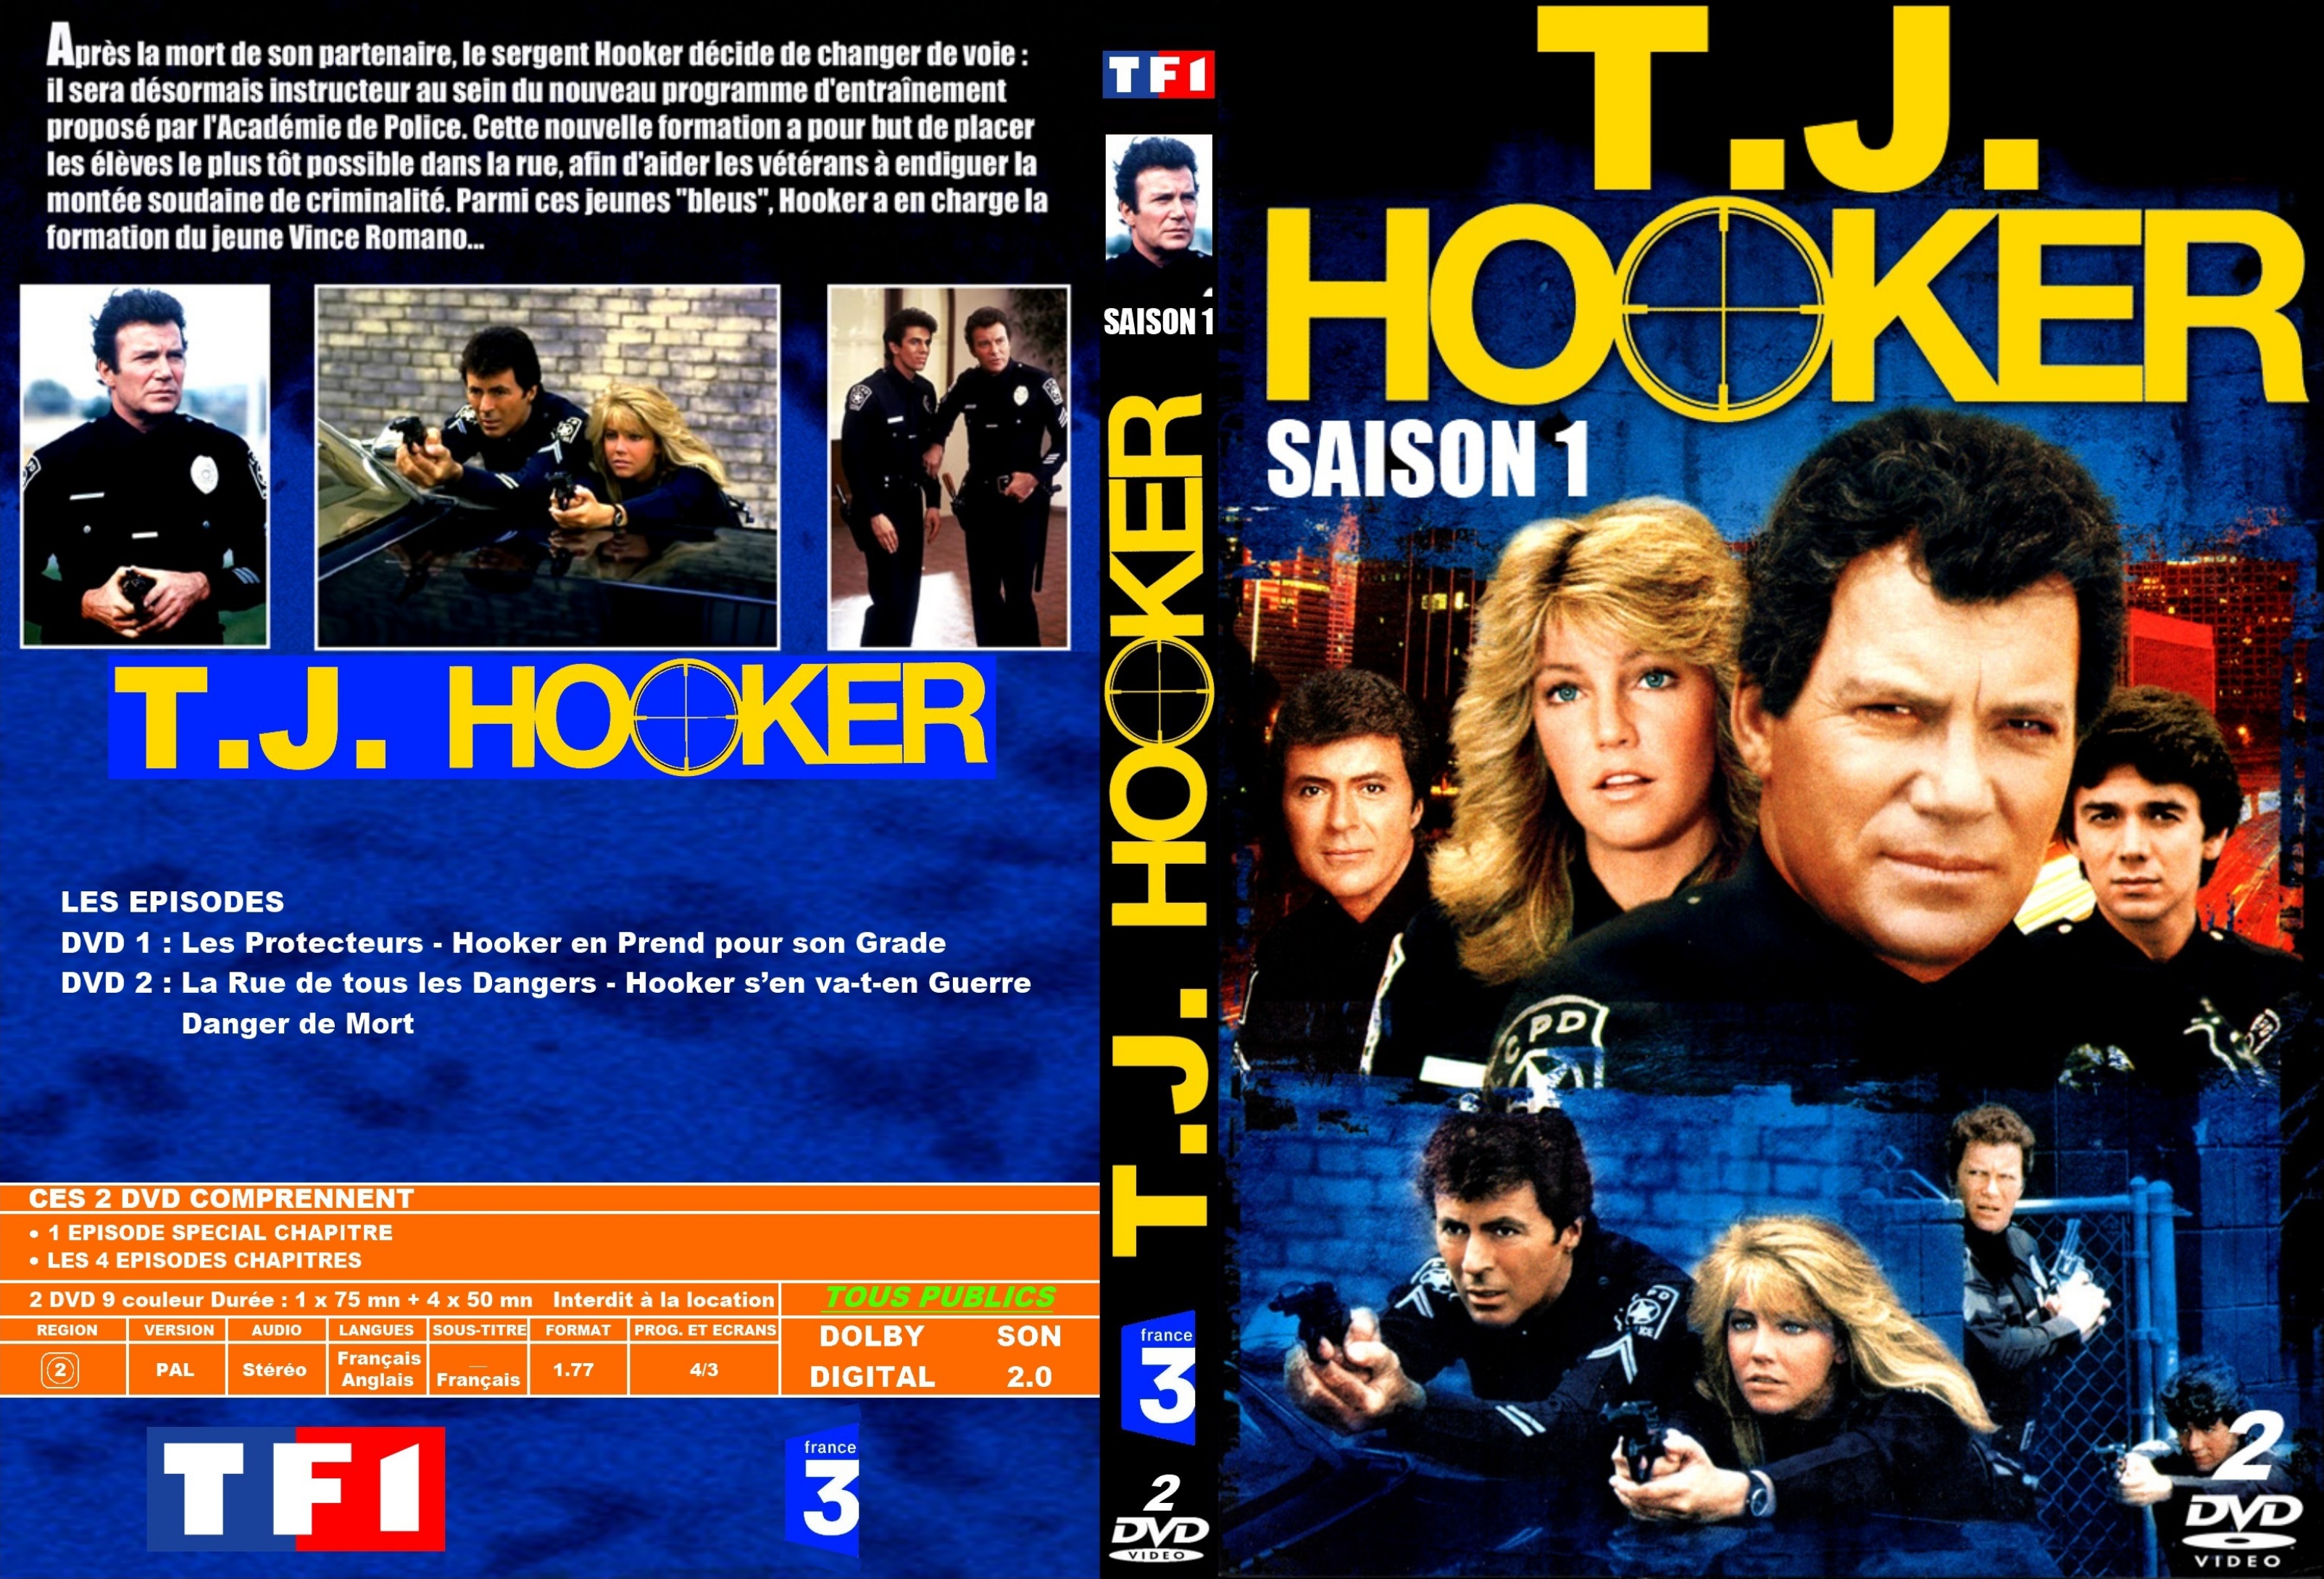 Jaquette DVD Hooker Saison 1 custom